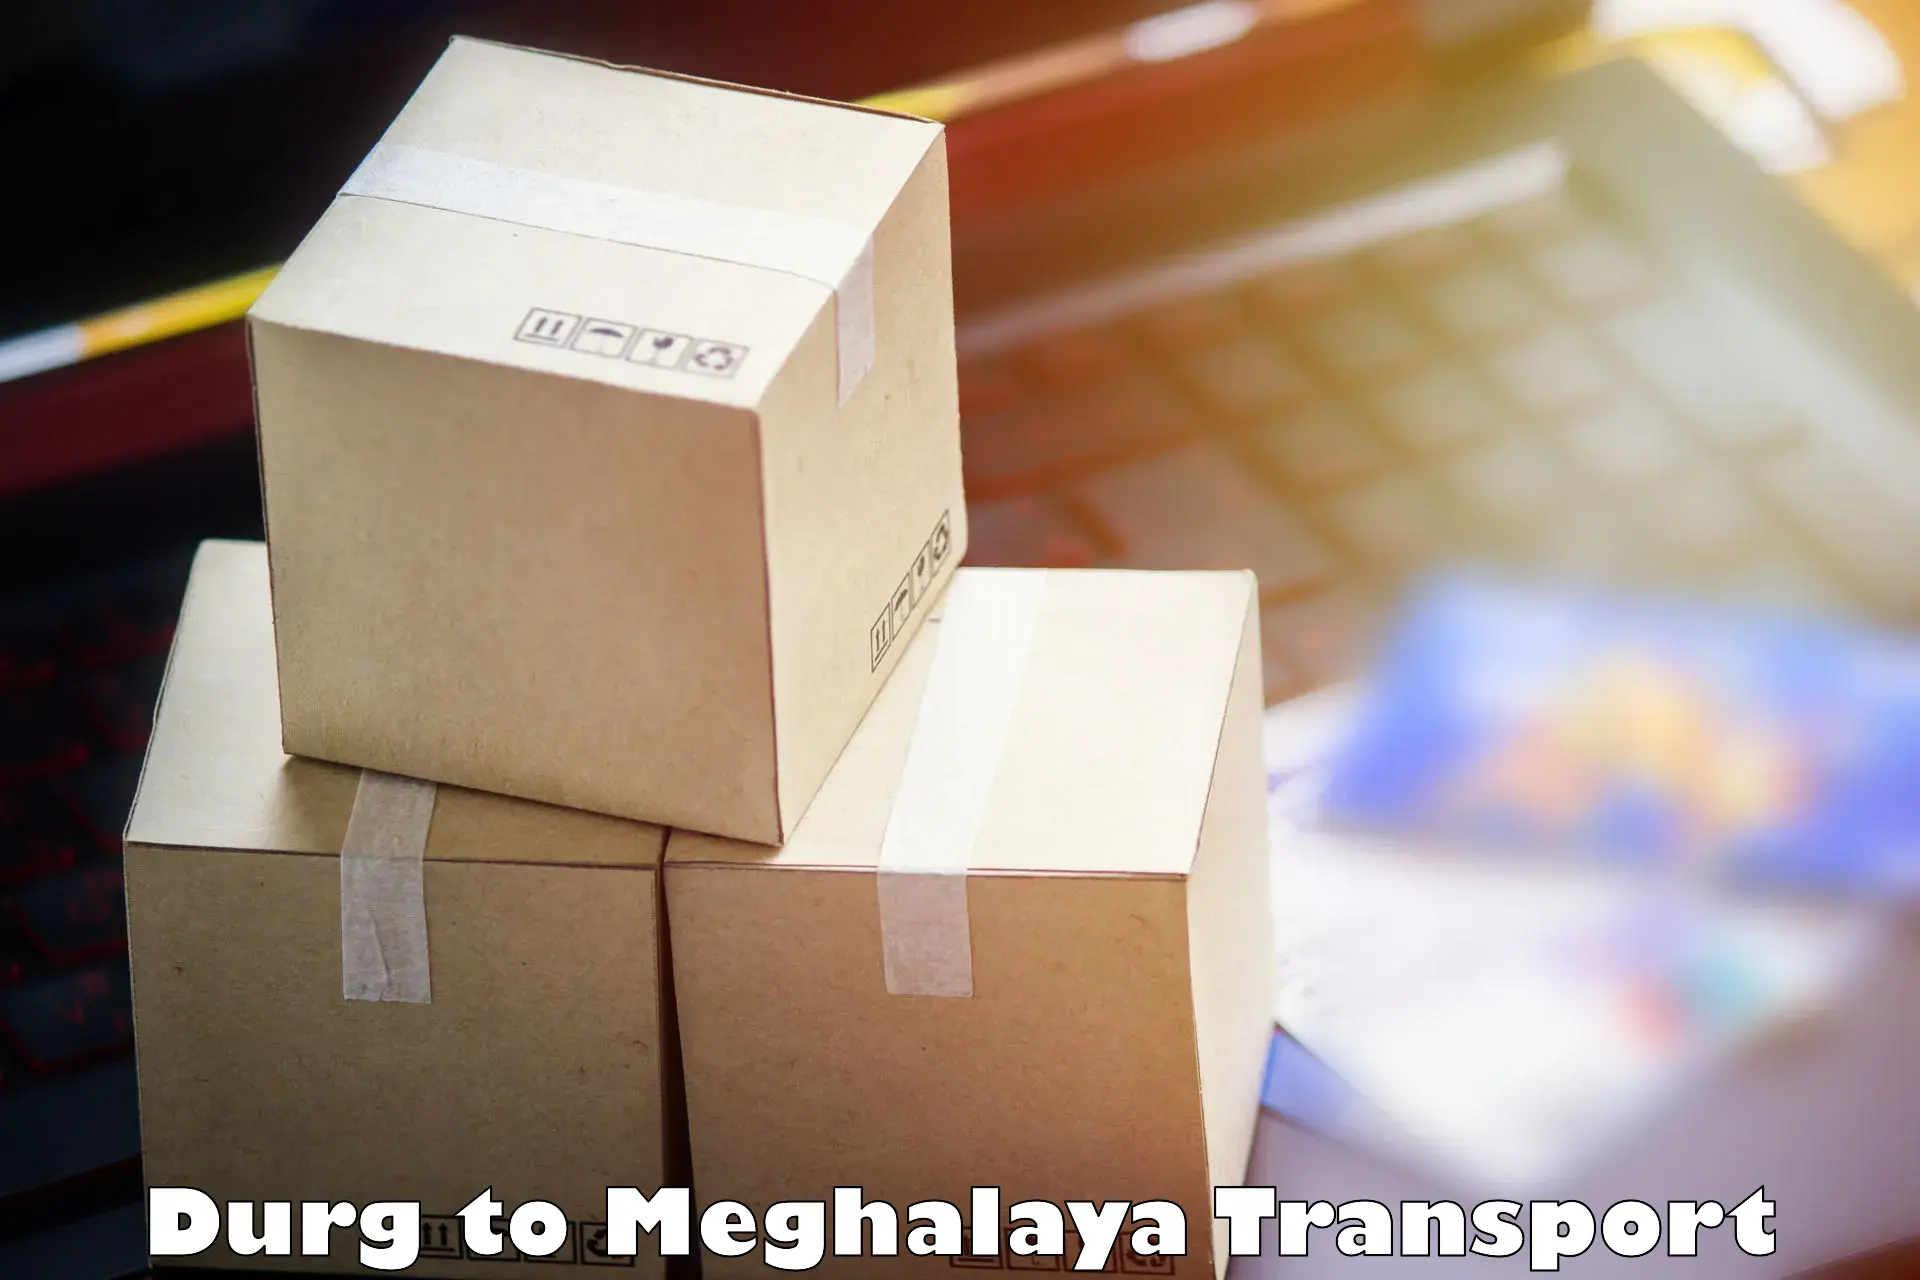 Shipping partner Durg to NIT Meghalaya